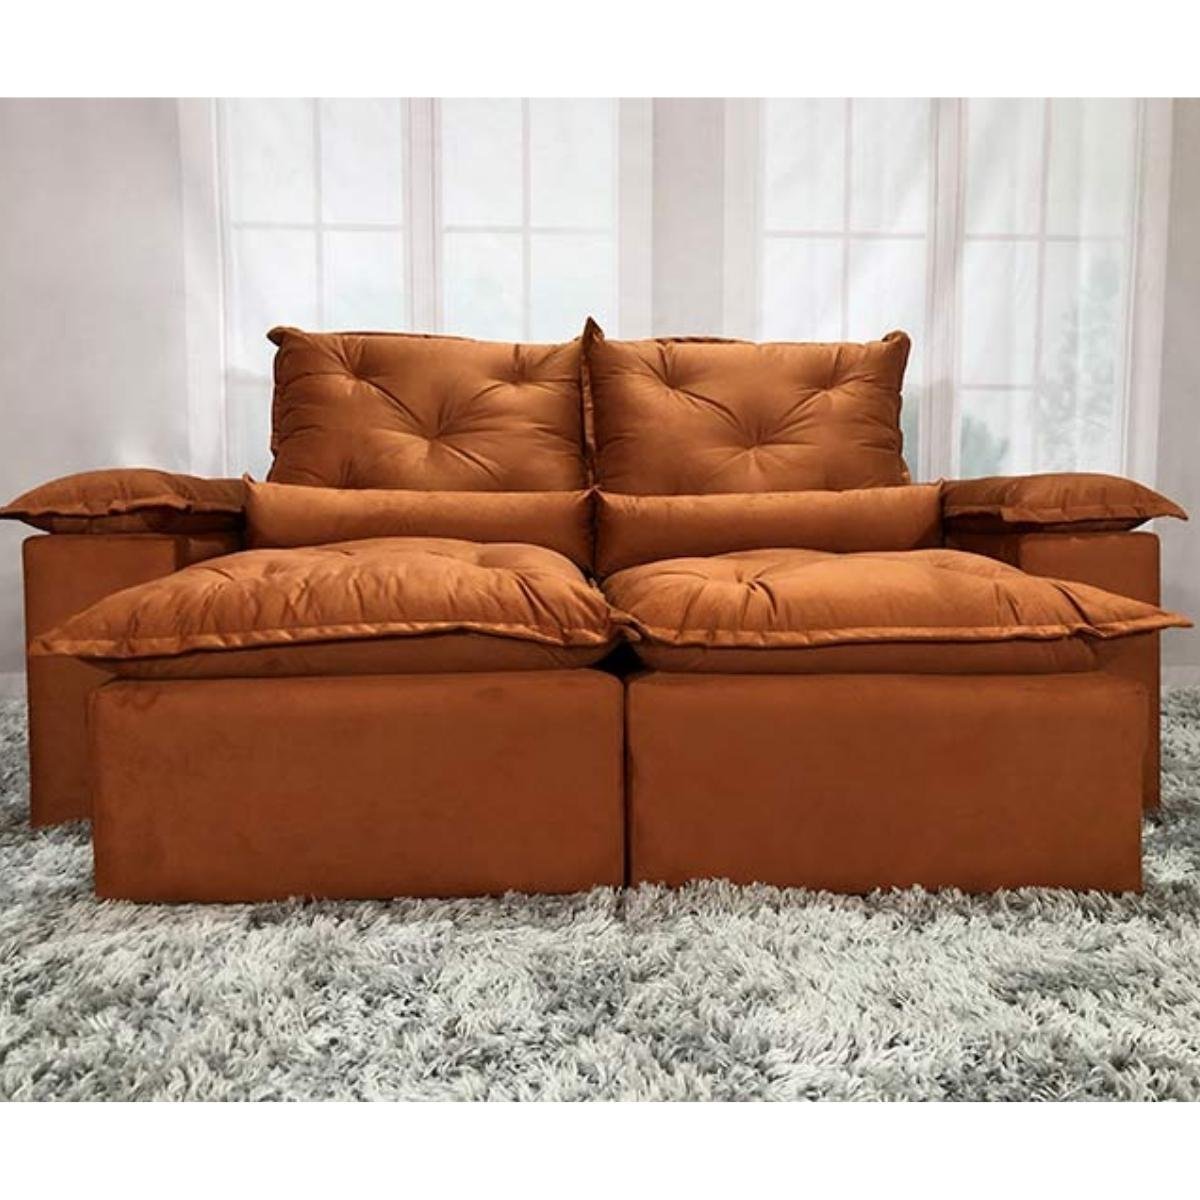 Sofa Reclinavel Retratil Design Elegante Athena 2,30m Veludo Cor:Terracota - 6